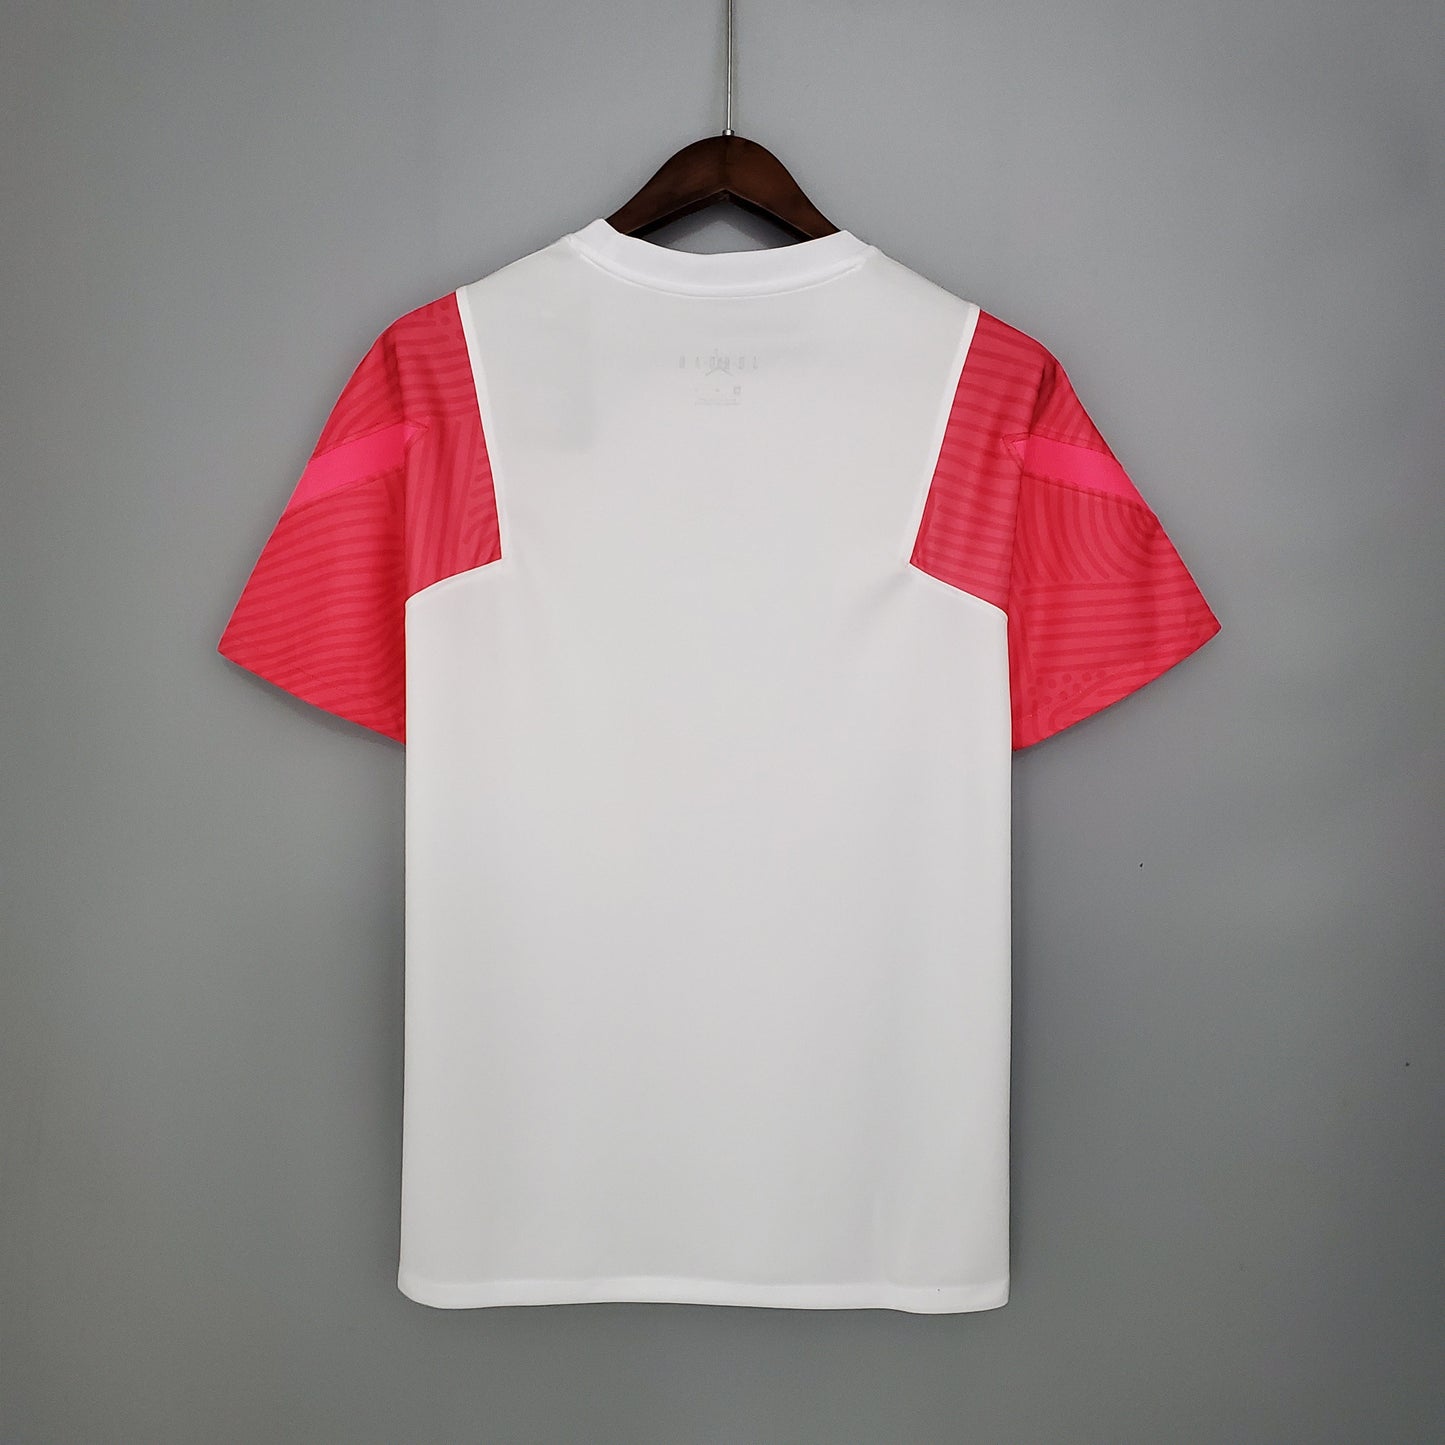 PSG Training Kit Pink & White 21/22